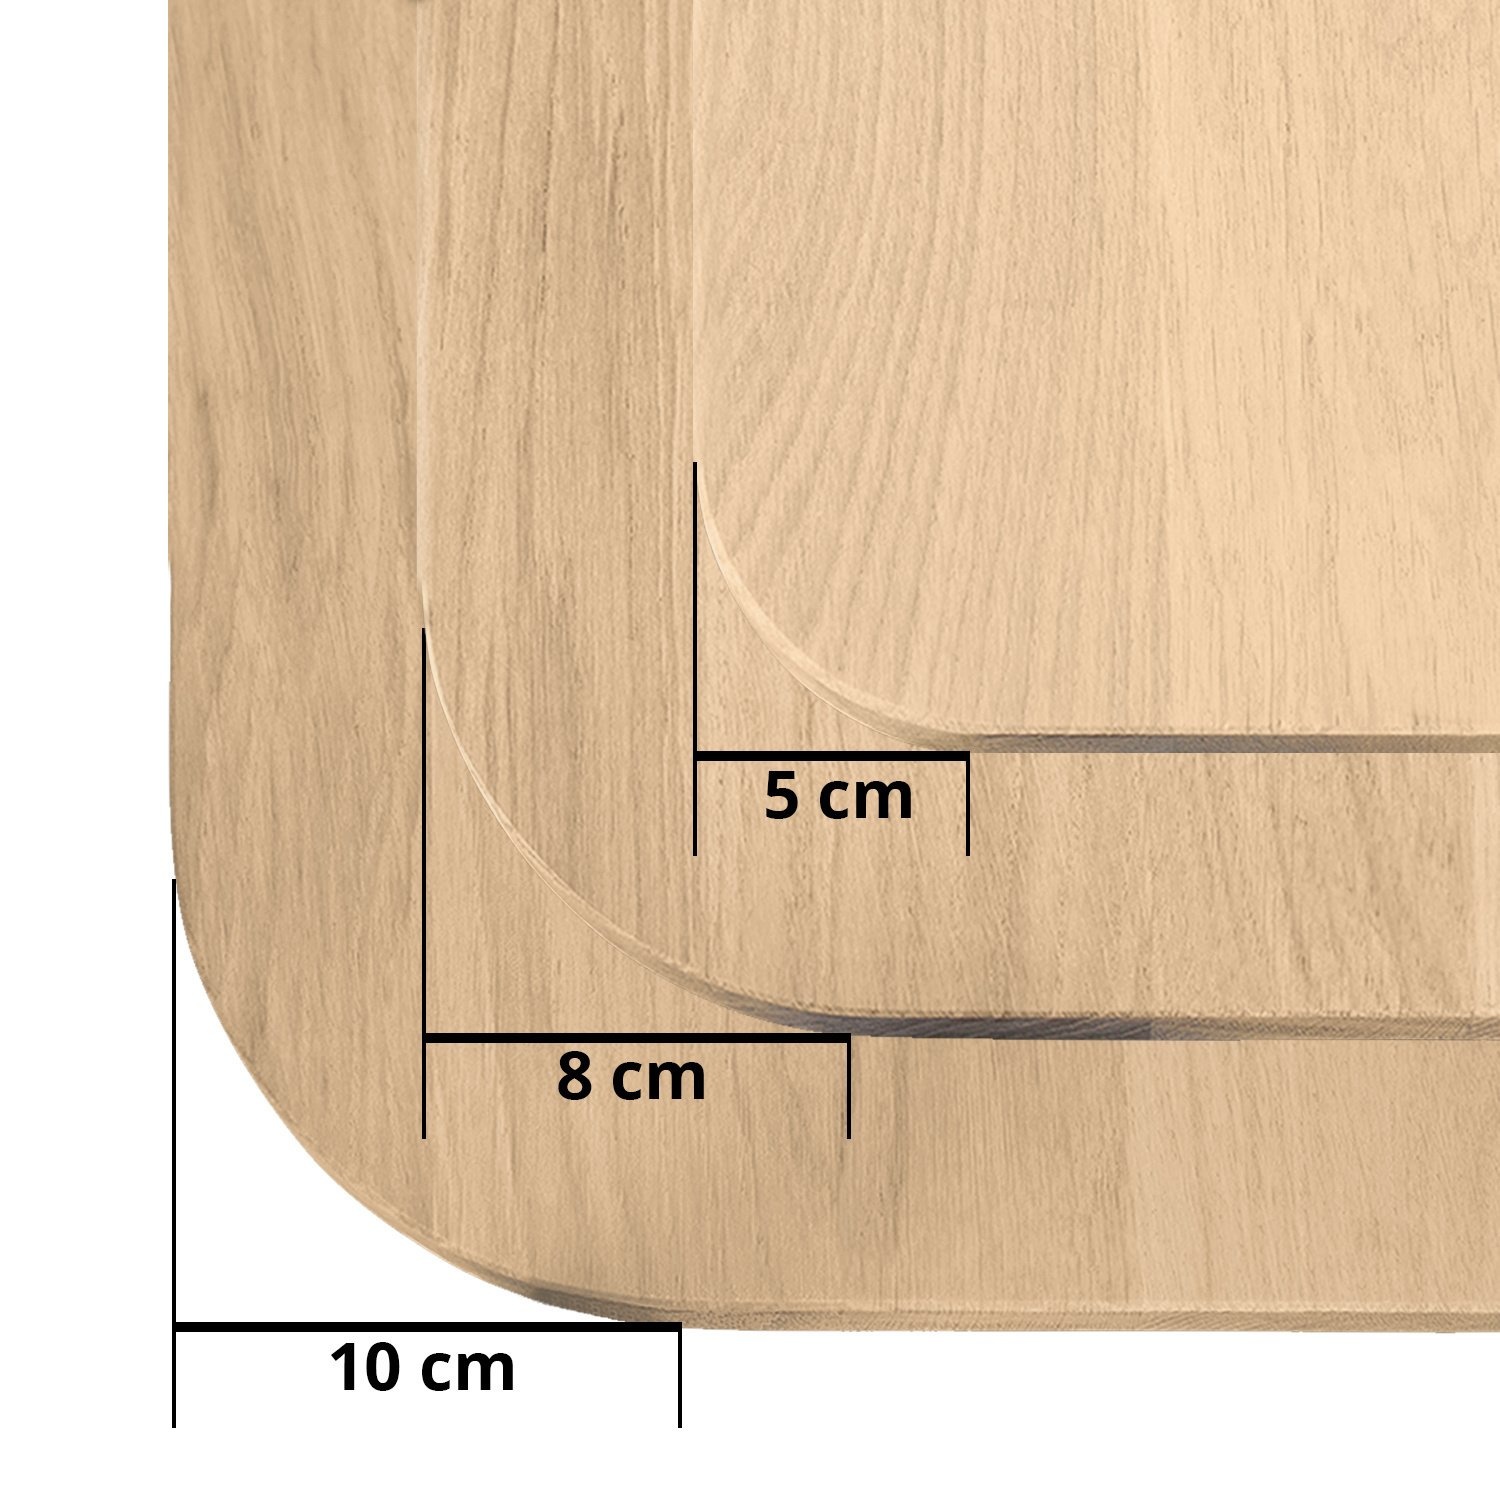  Tischplatte Eiche - mit runden Ecken - 2,7 cm dick (1-Schicht) - Breite Lamellen (10 - 12 cm breit) - Eichenholz rustikal - verleimt & künstlich getrocknet (HF 8-12%) - mit abgerundeten Kanten - verschiedene Größen